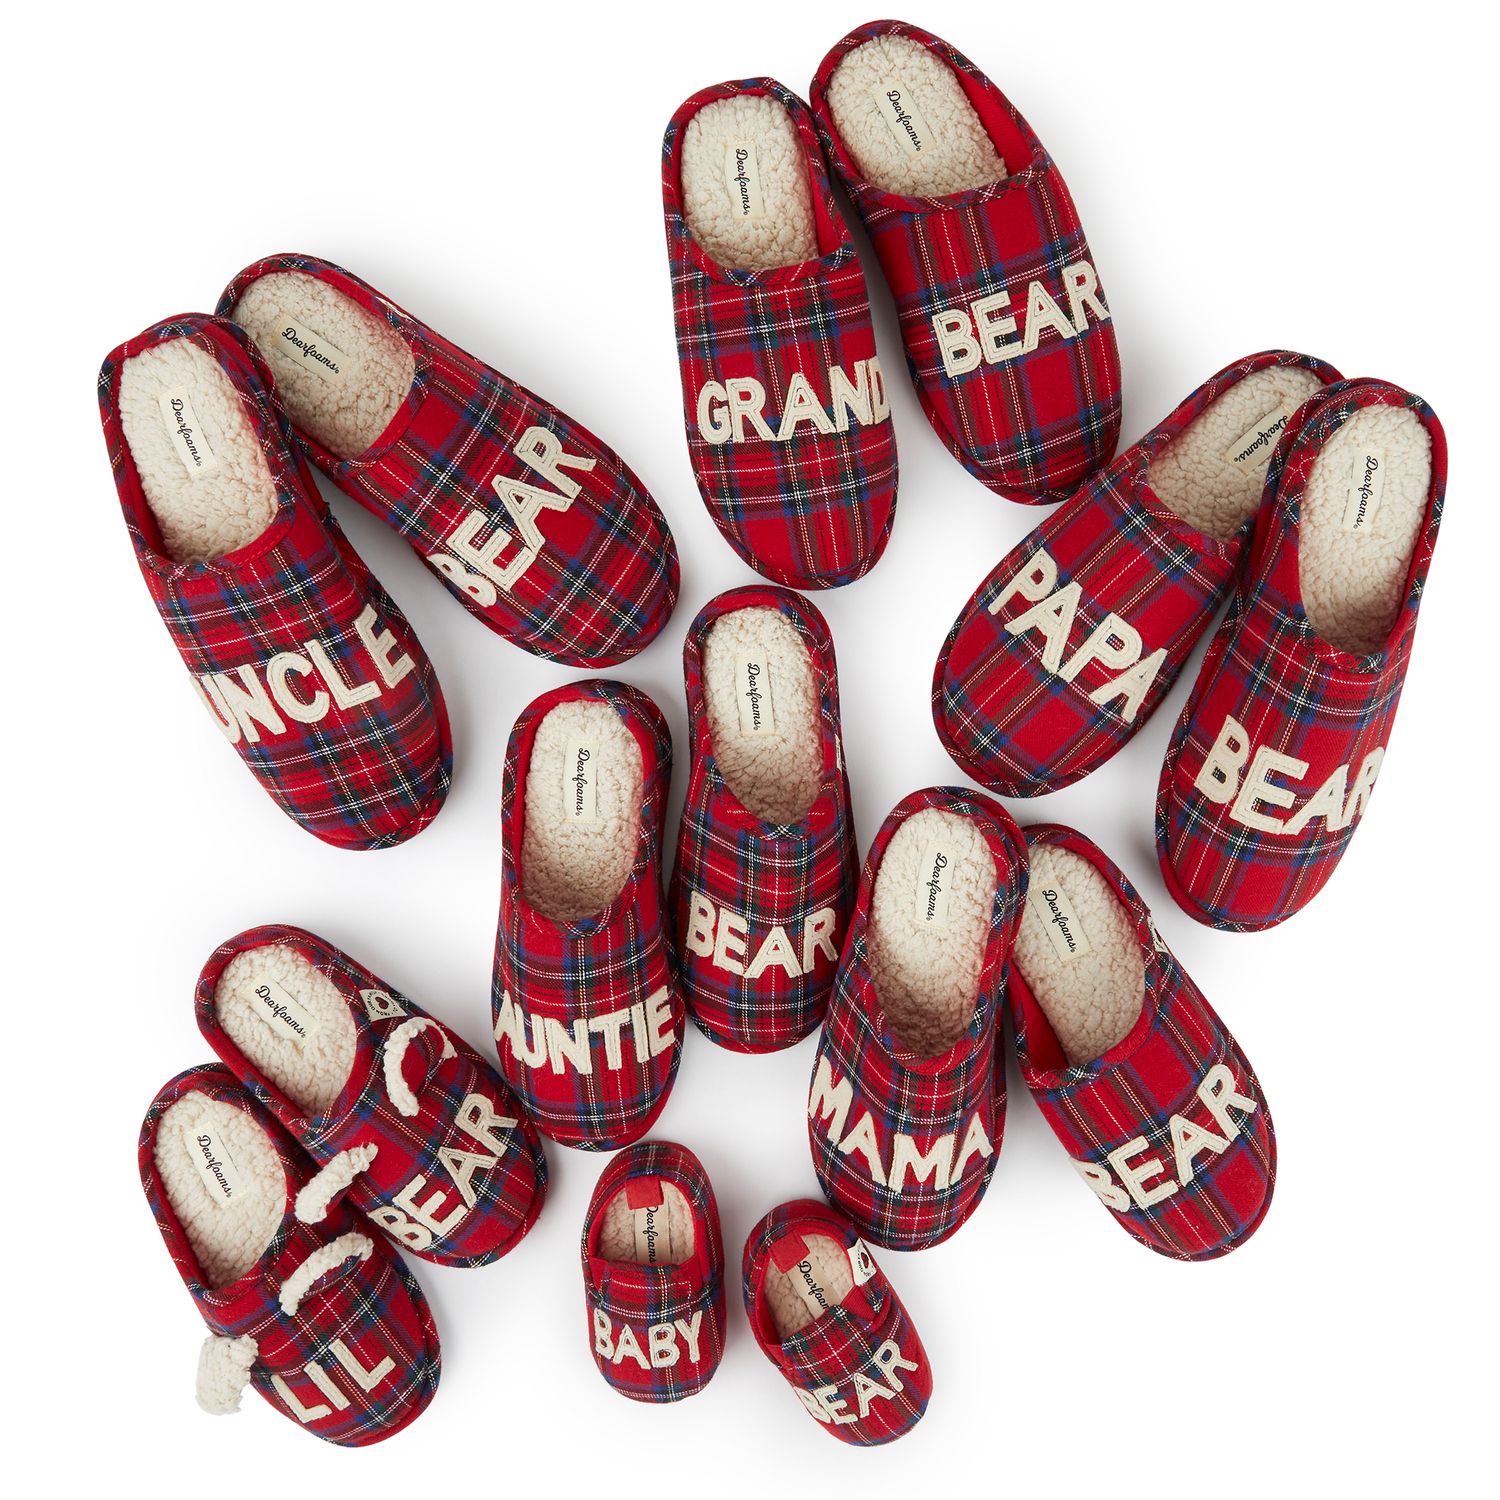 dearfoam grand bear slippers